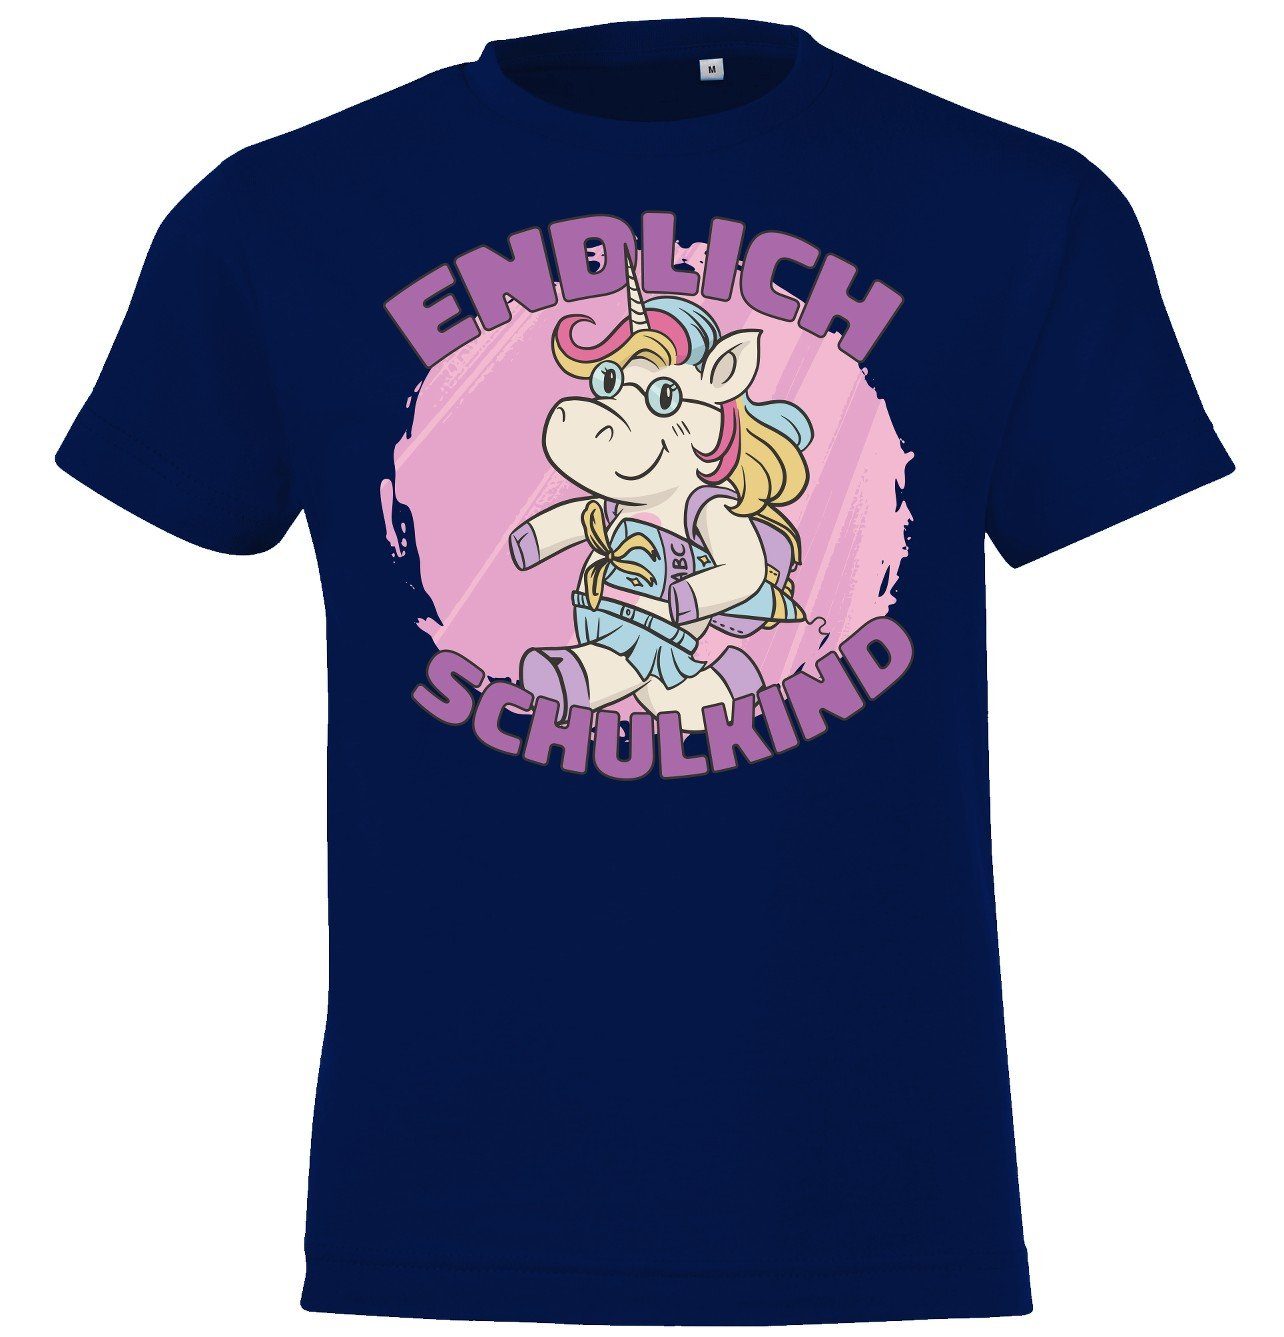 Youth Designz T-Shirt Endlich Schulkind Kinder Shirt mit süßem Einhorn Motiv Navy